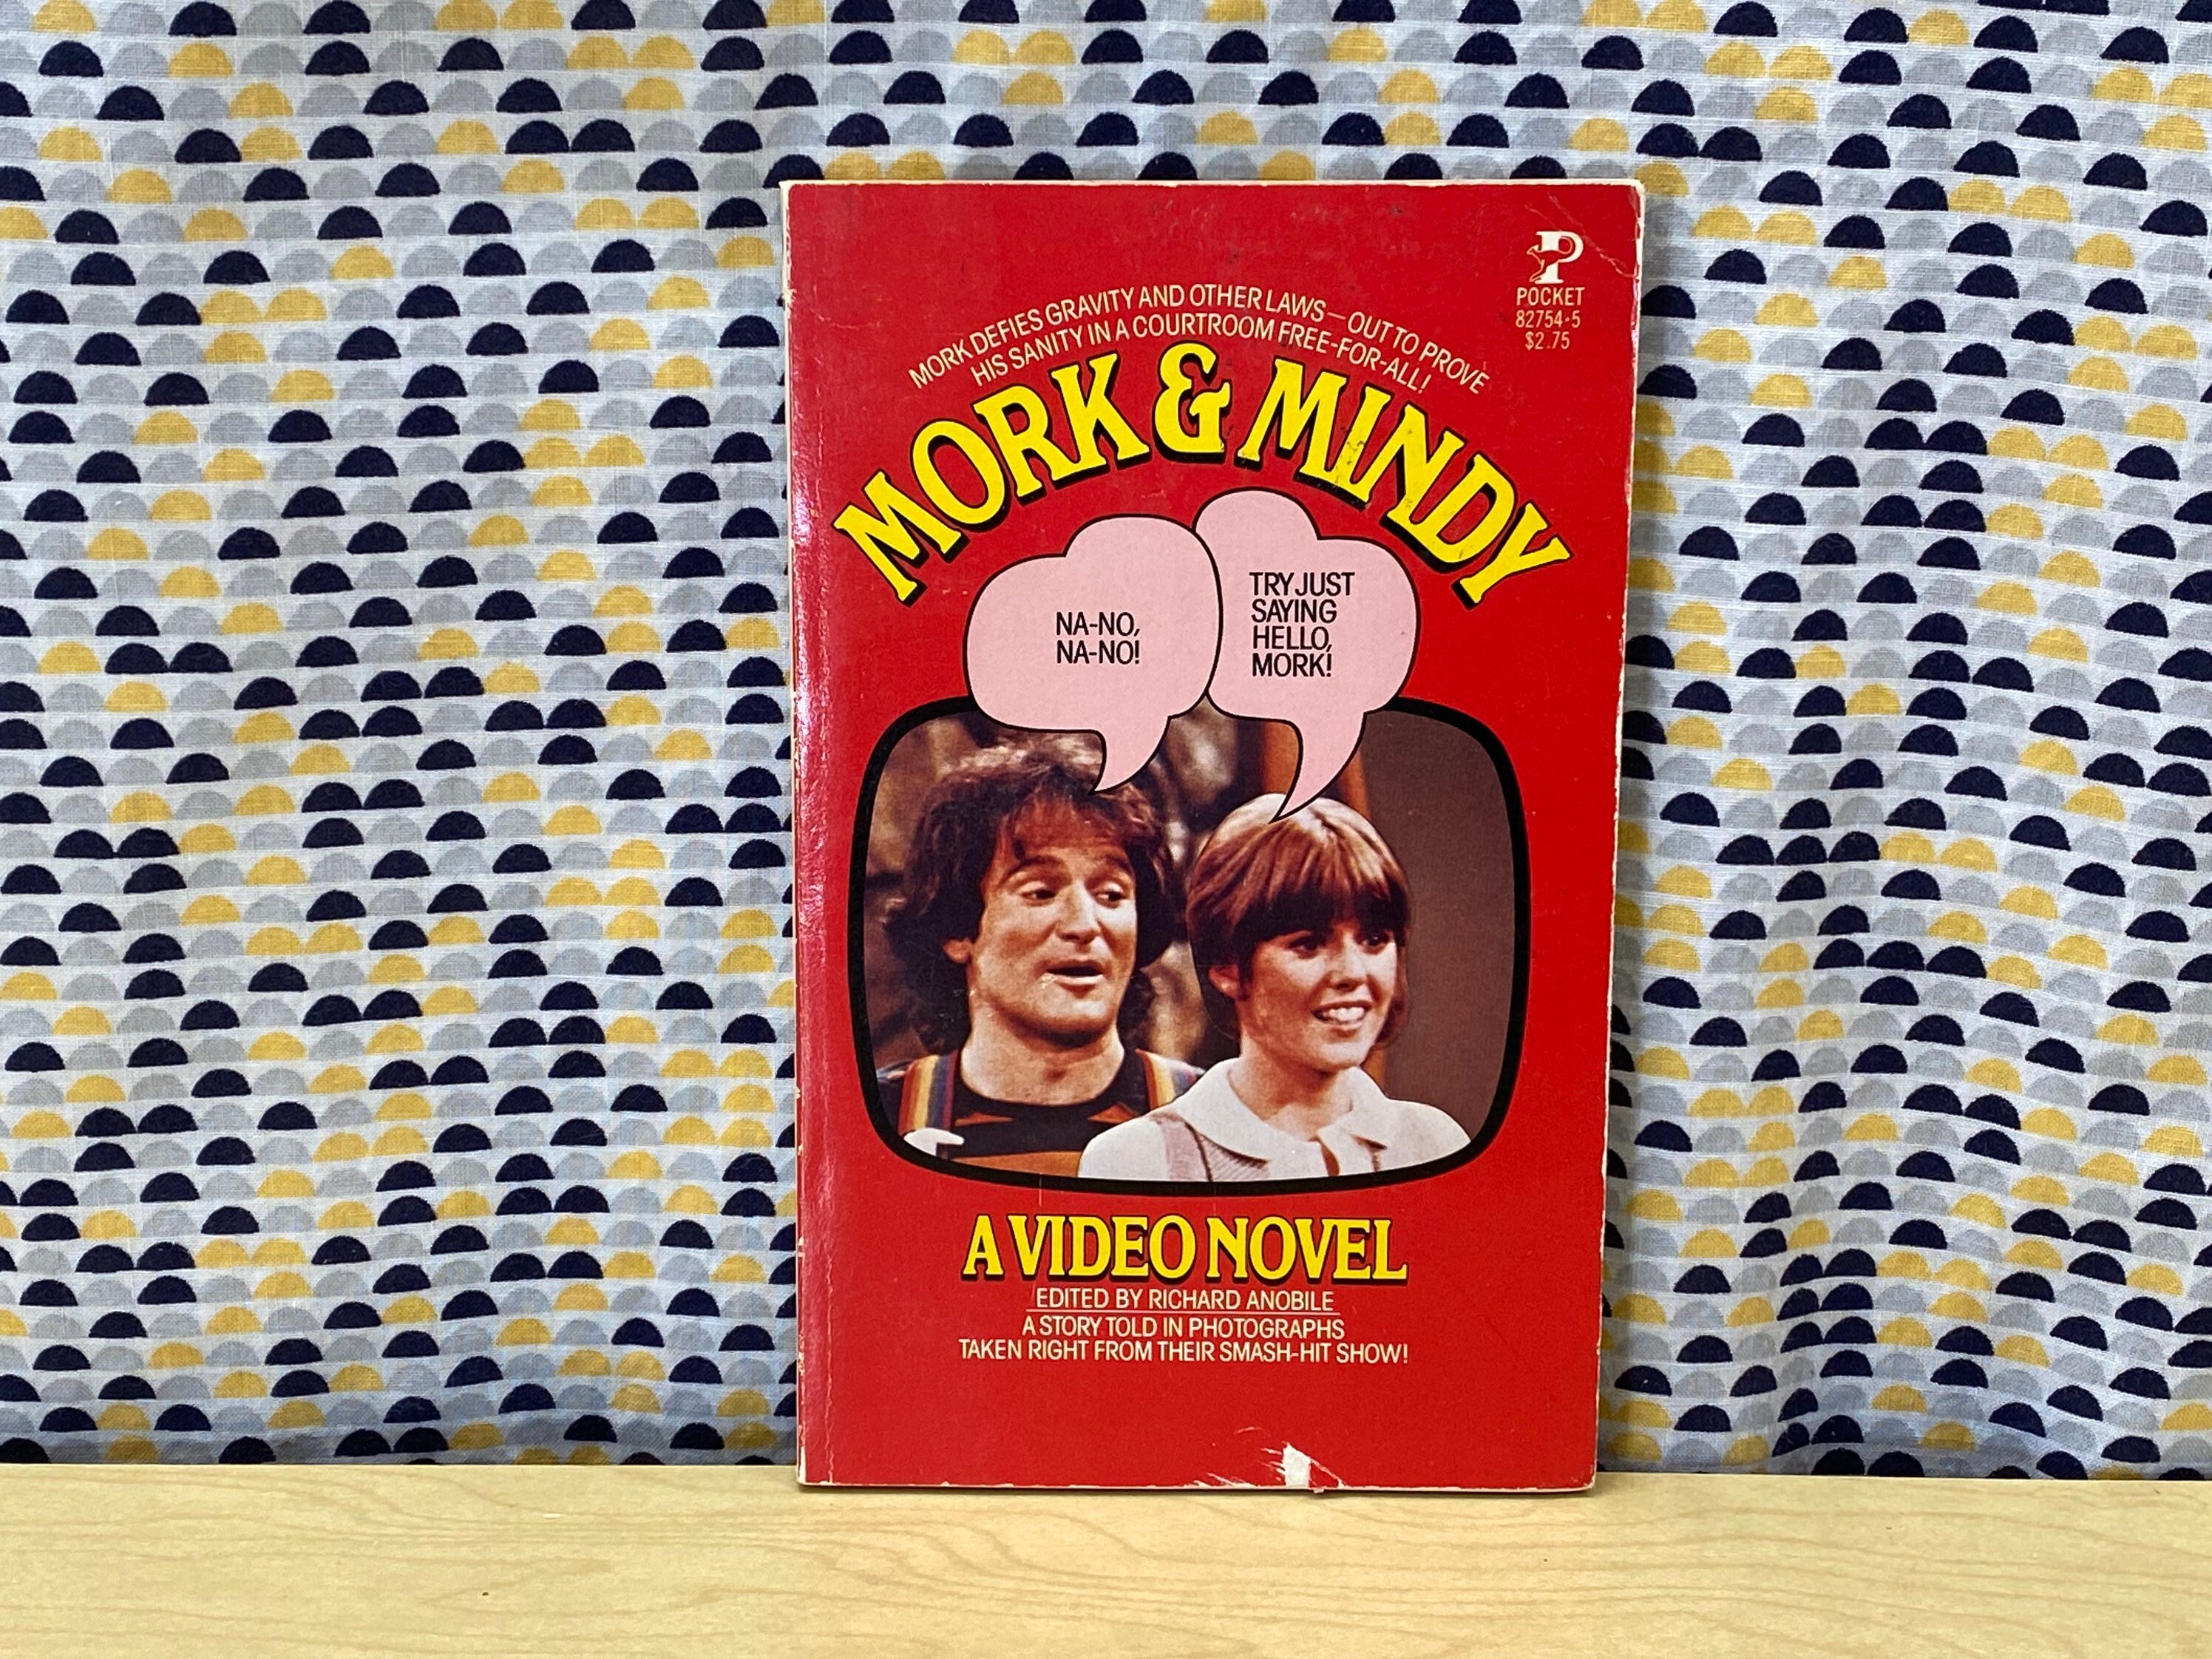 Mork and Mindy A Video Novel Fotonovel Vintage Paperback pic